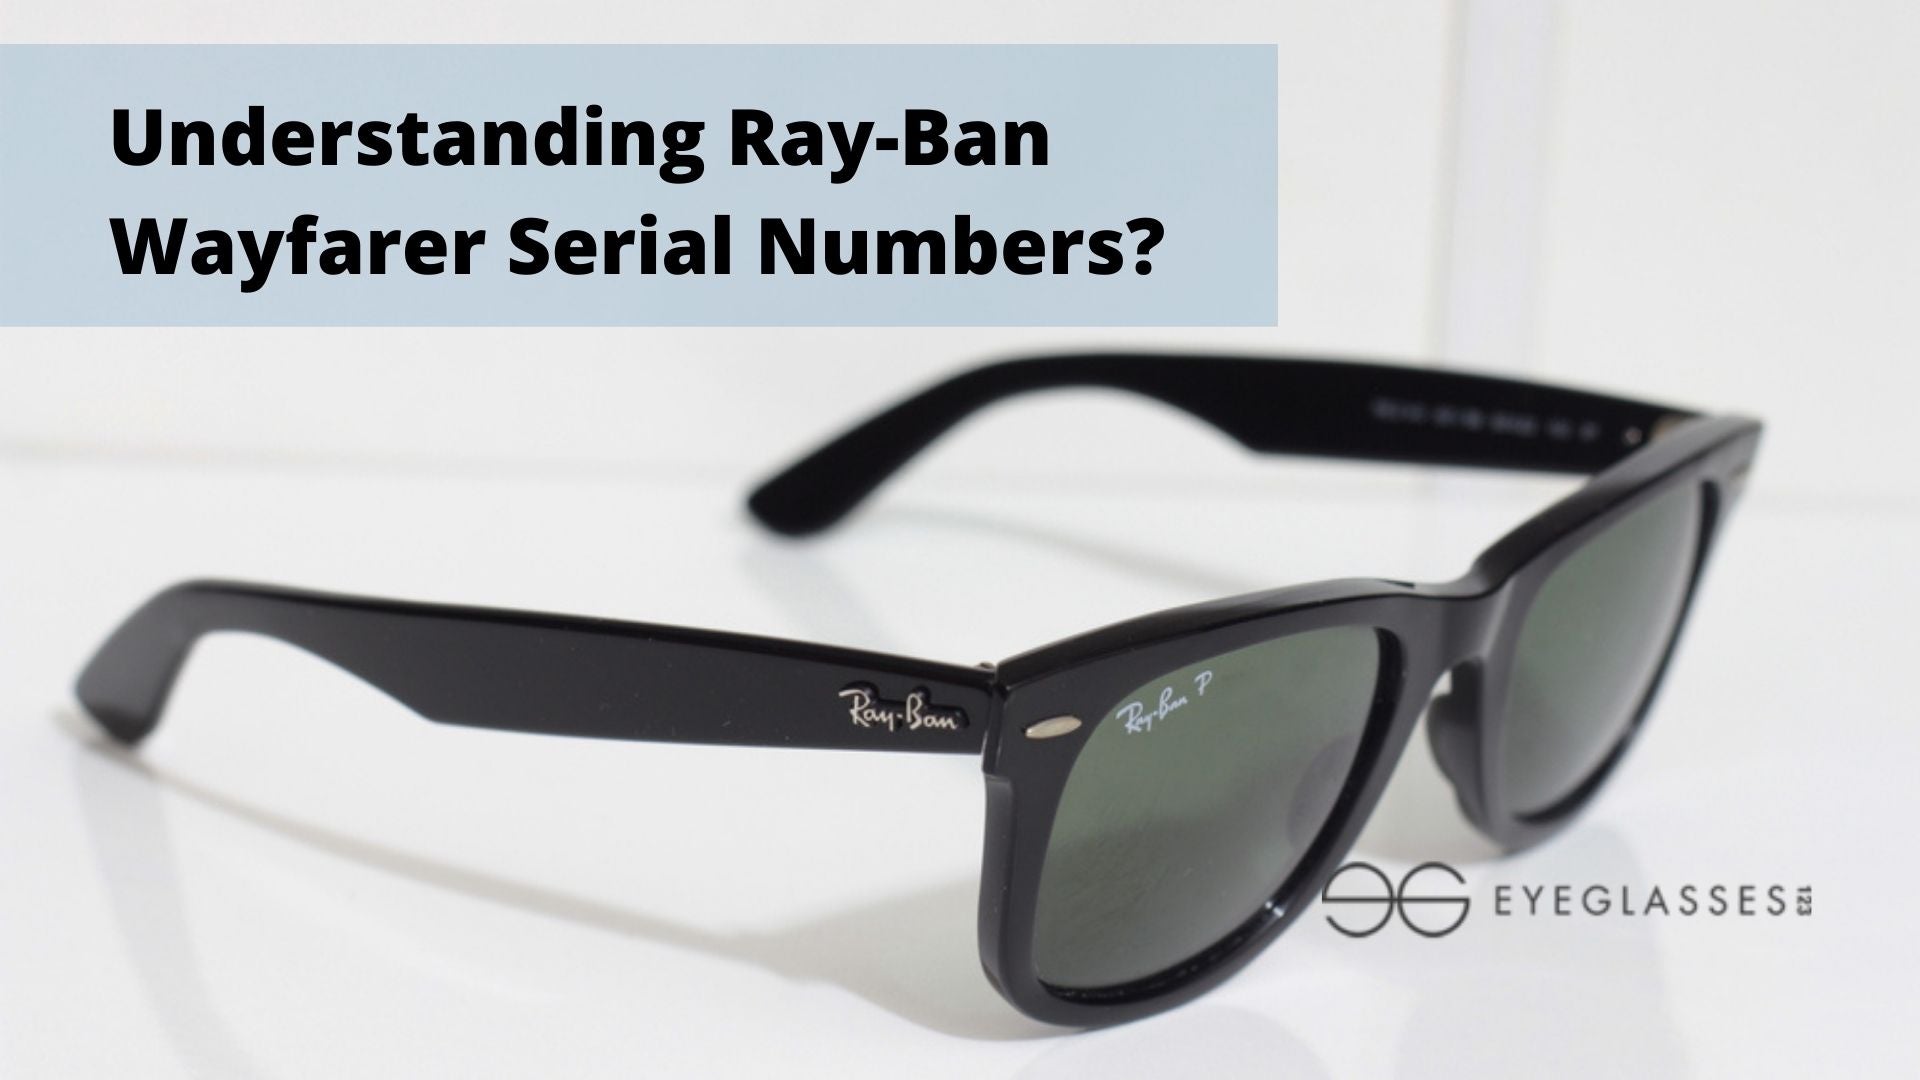 Understanding Ray-Ban Wayfarer Serial Numbers